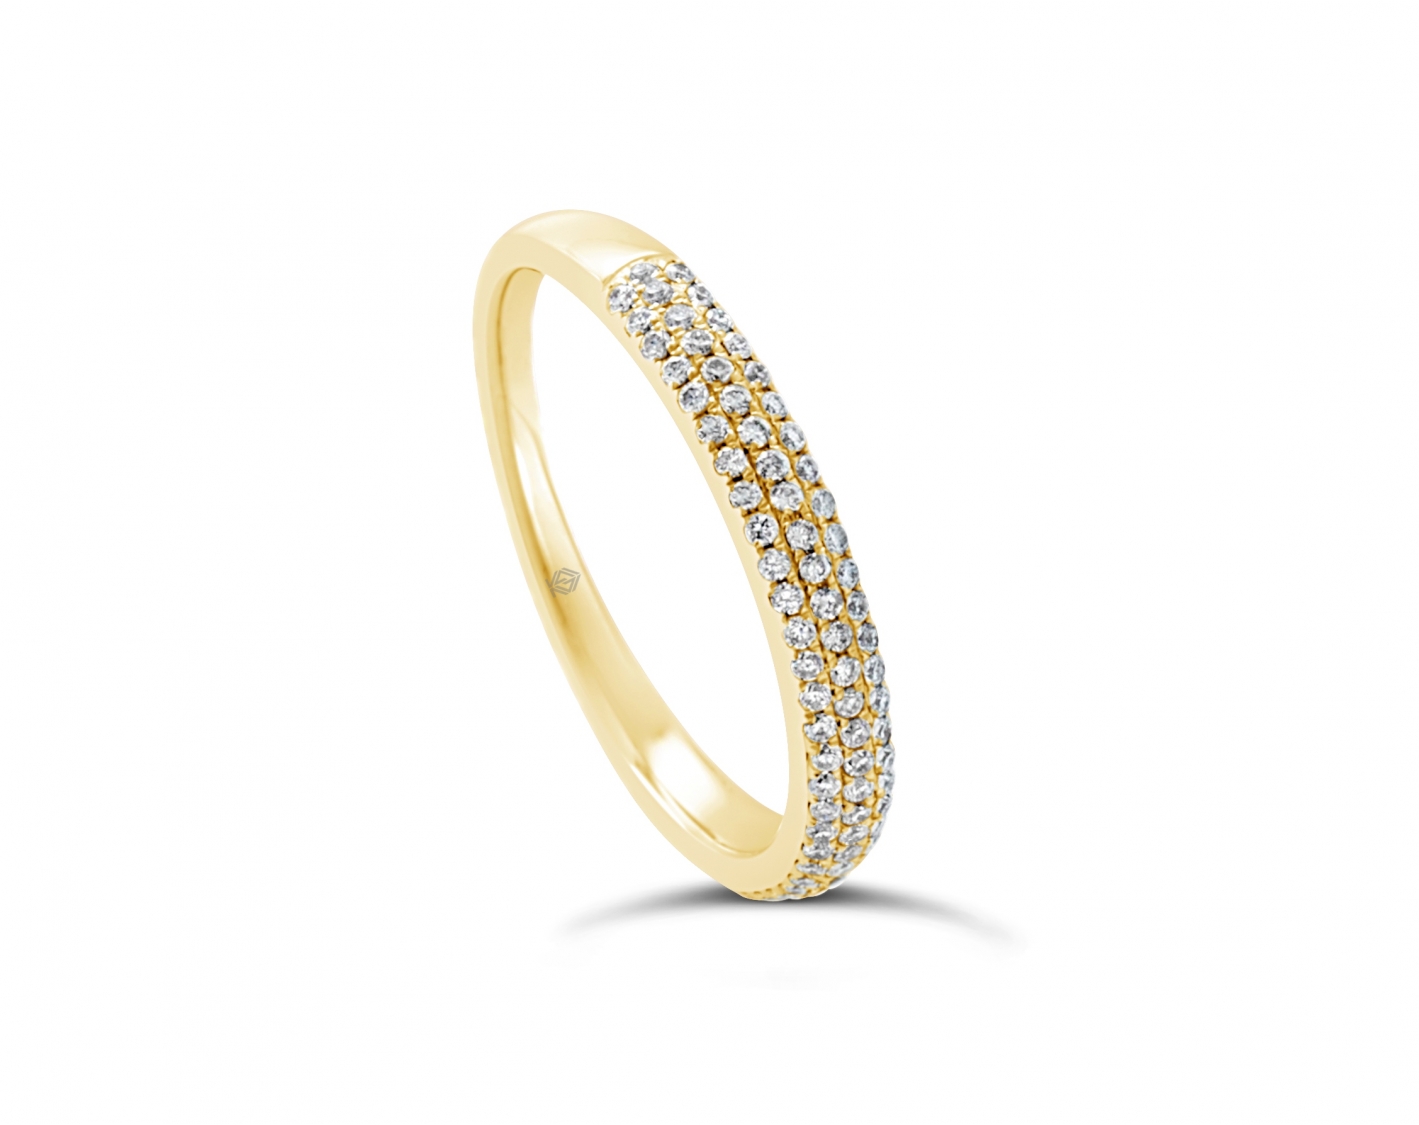 18k white gold 3-row bombay half eternity round shaped diamond wedding ring Photos & images